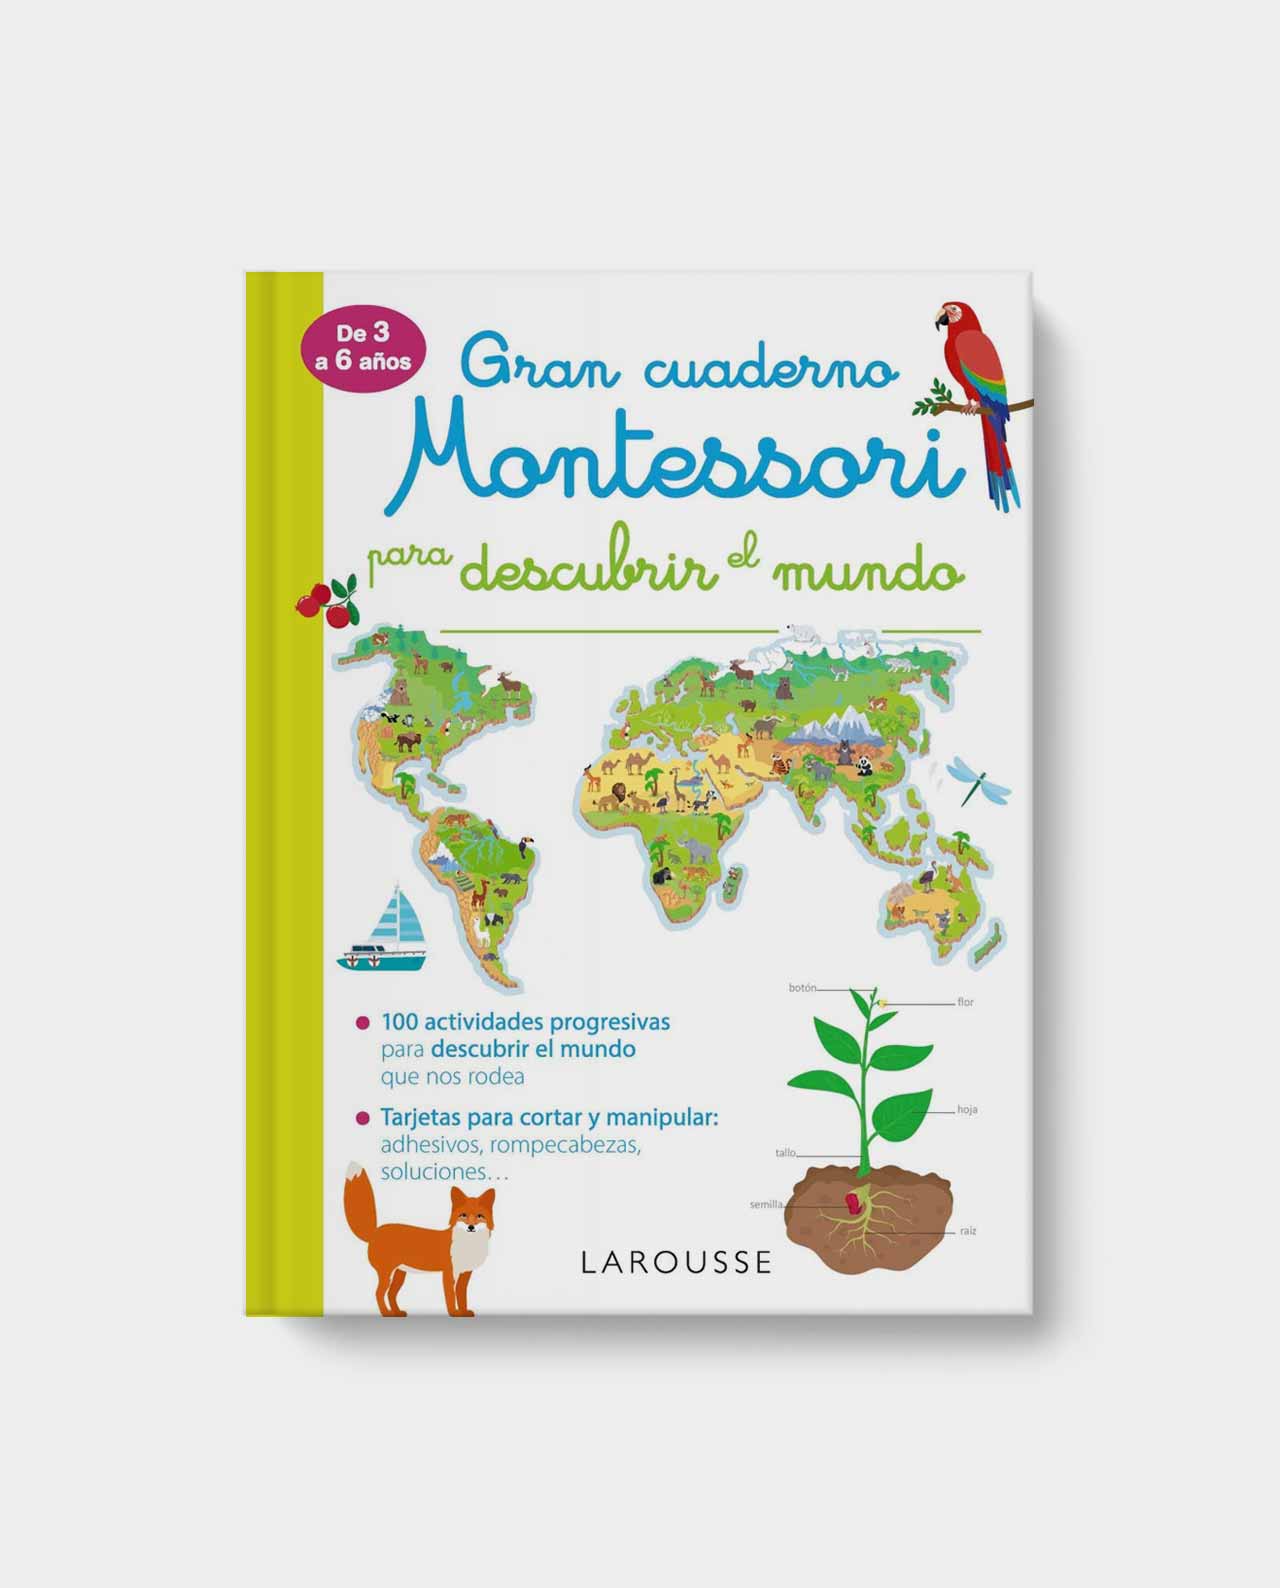 Gran libro de Ciencias Montessori - El Librero Colombia